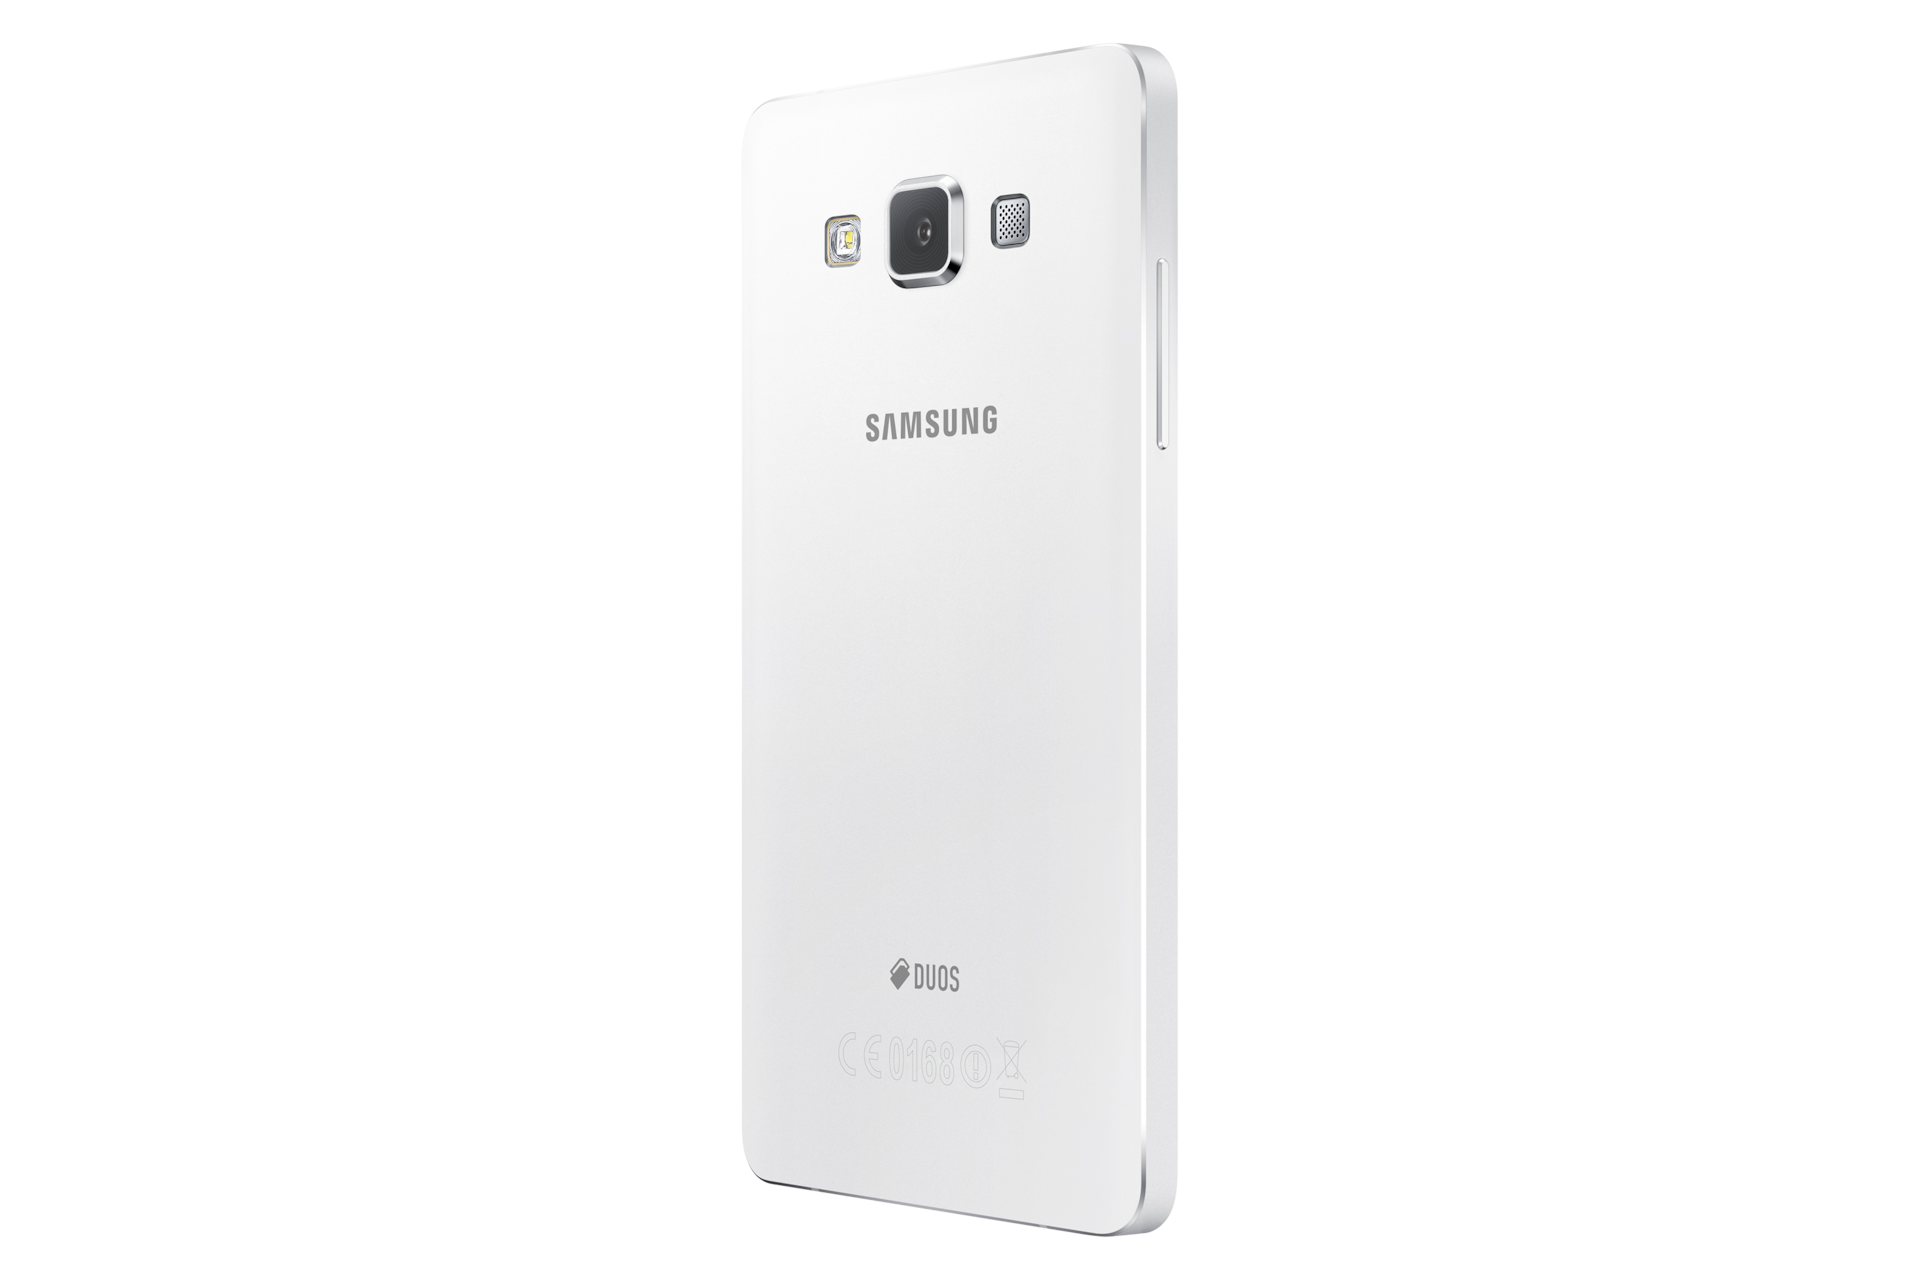 Samsung Galaxy a51 белый. Samsung Galaxy a7 SM a700fd. Самсунг SM-a300f. Смартфон Samsung Galaxy a41 белый.